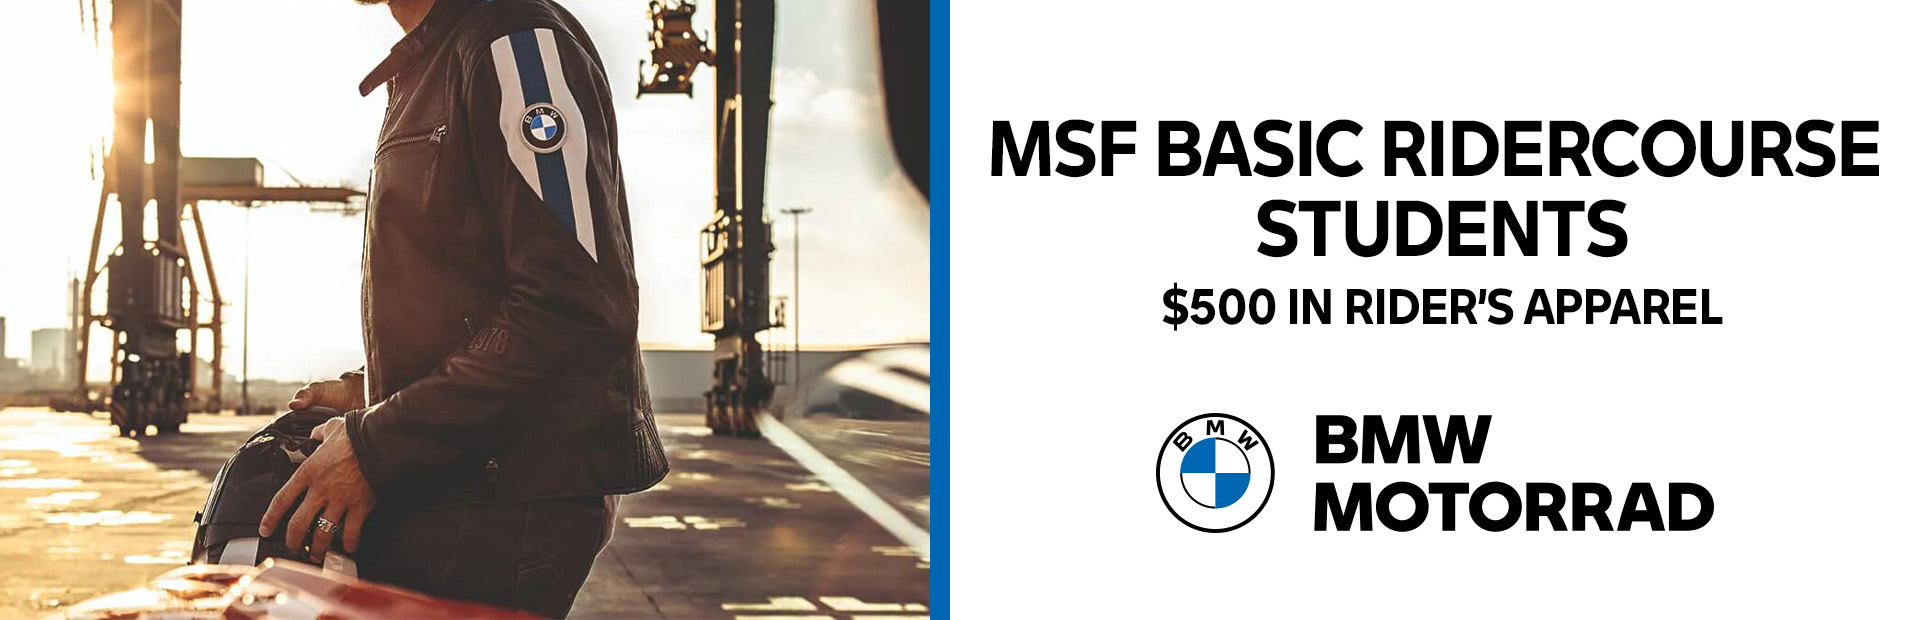 BMW - MSF Basic Ridercourse Students at Lynnwood Motoplex, Lynnwood, WA 98037